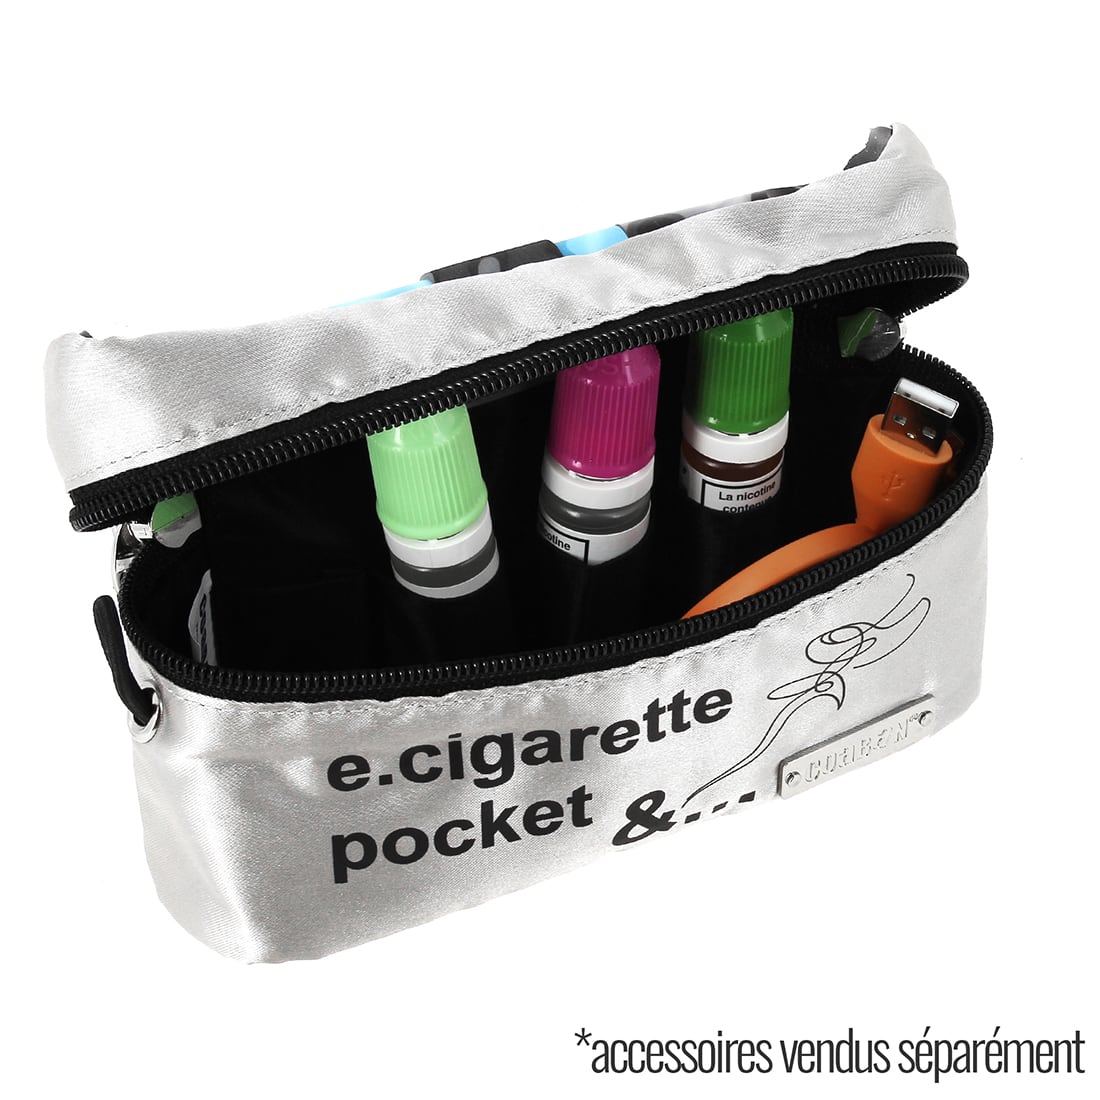 Trousse cigarette electronique Coaban